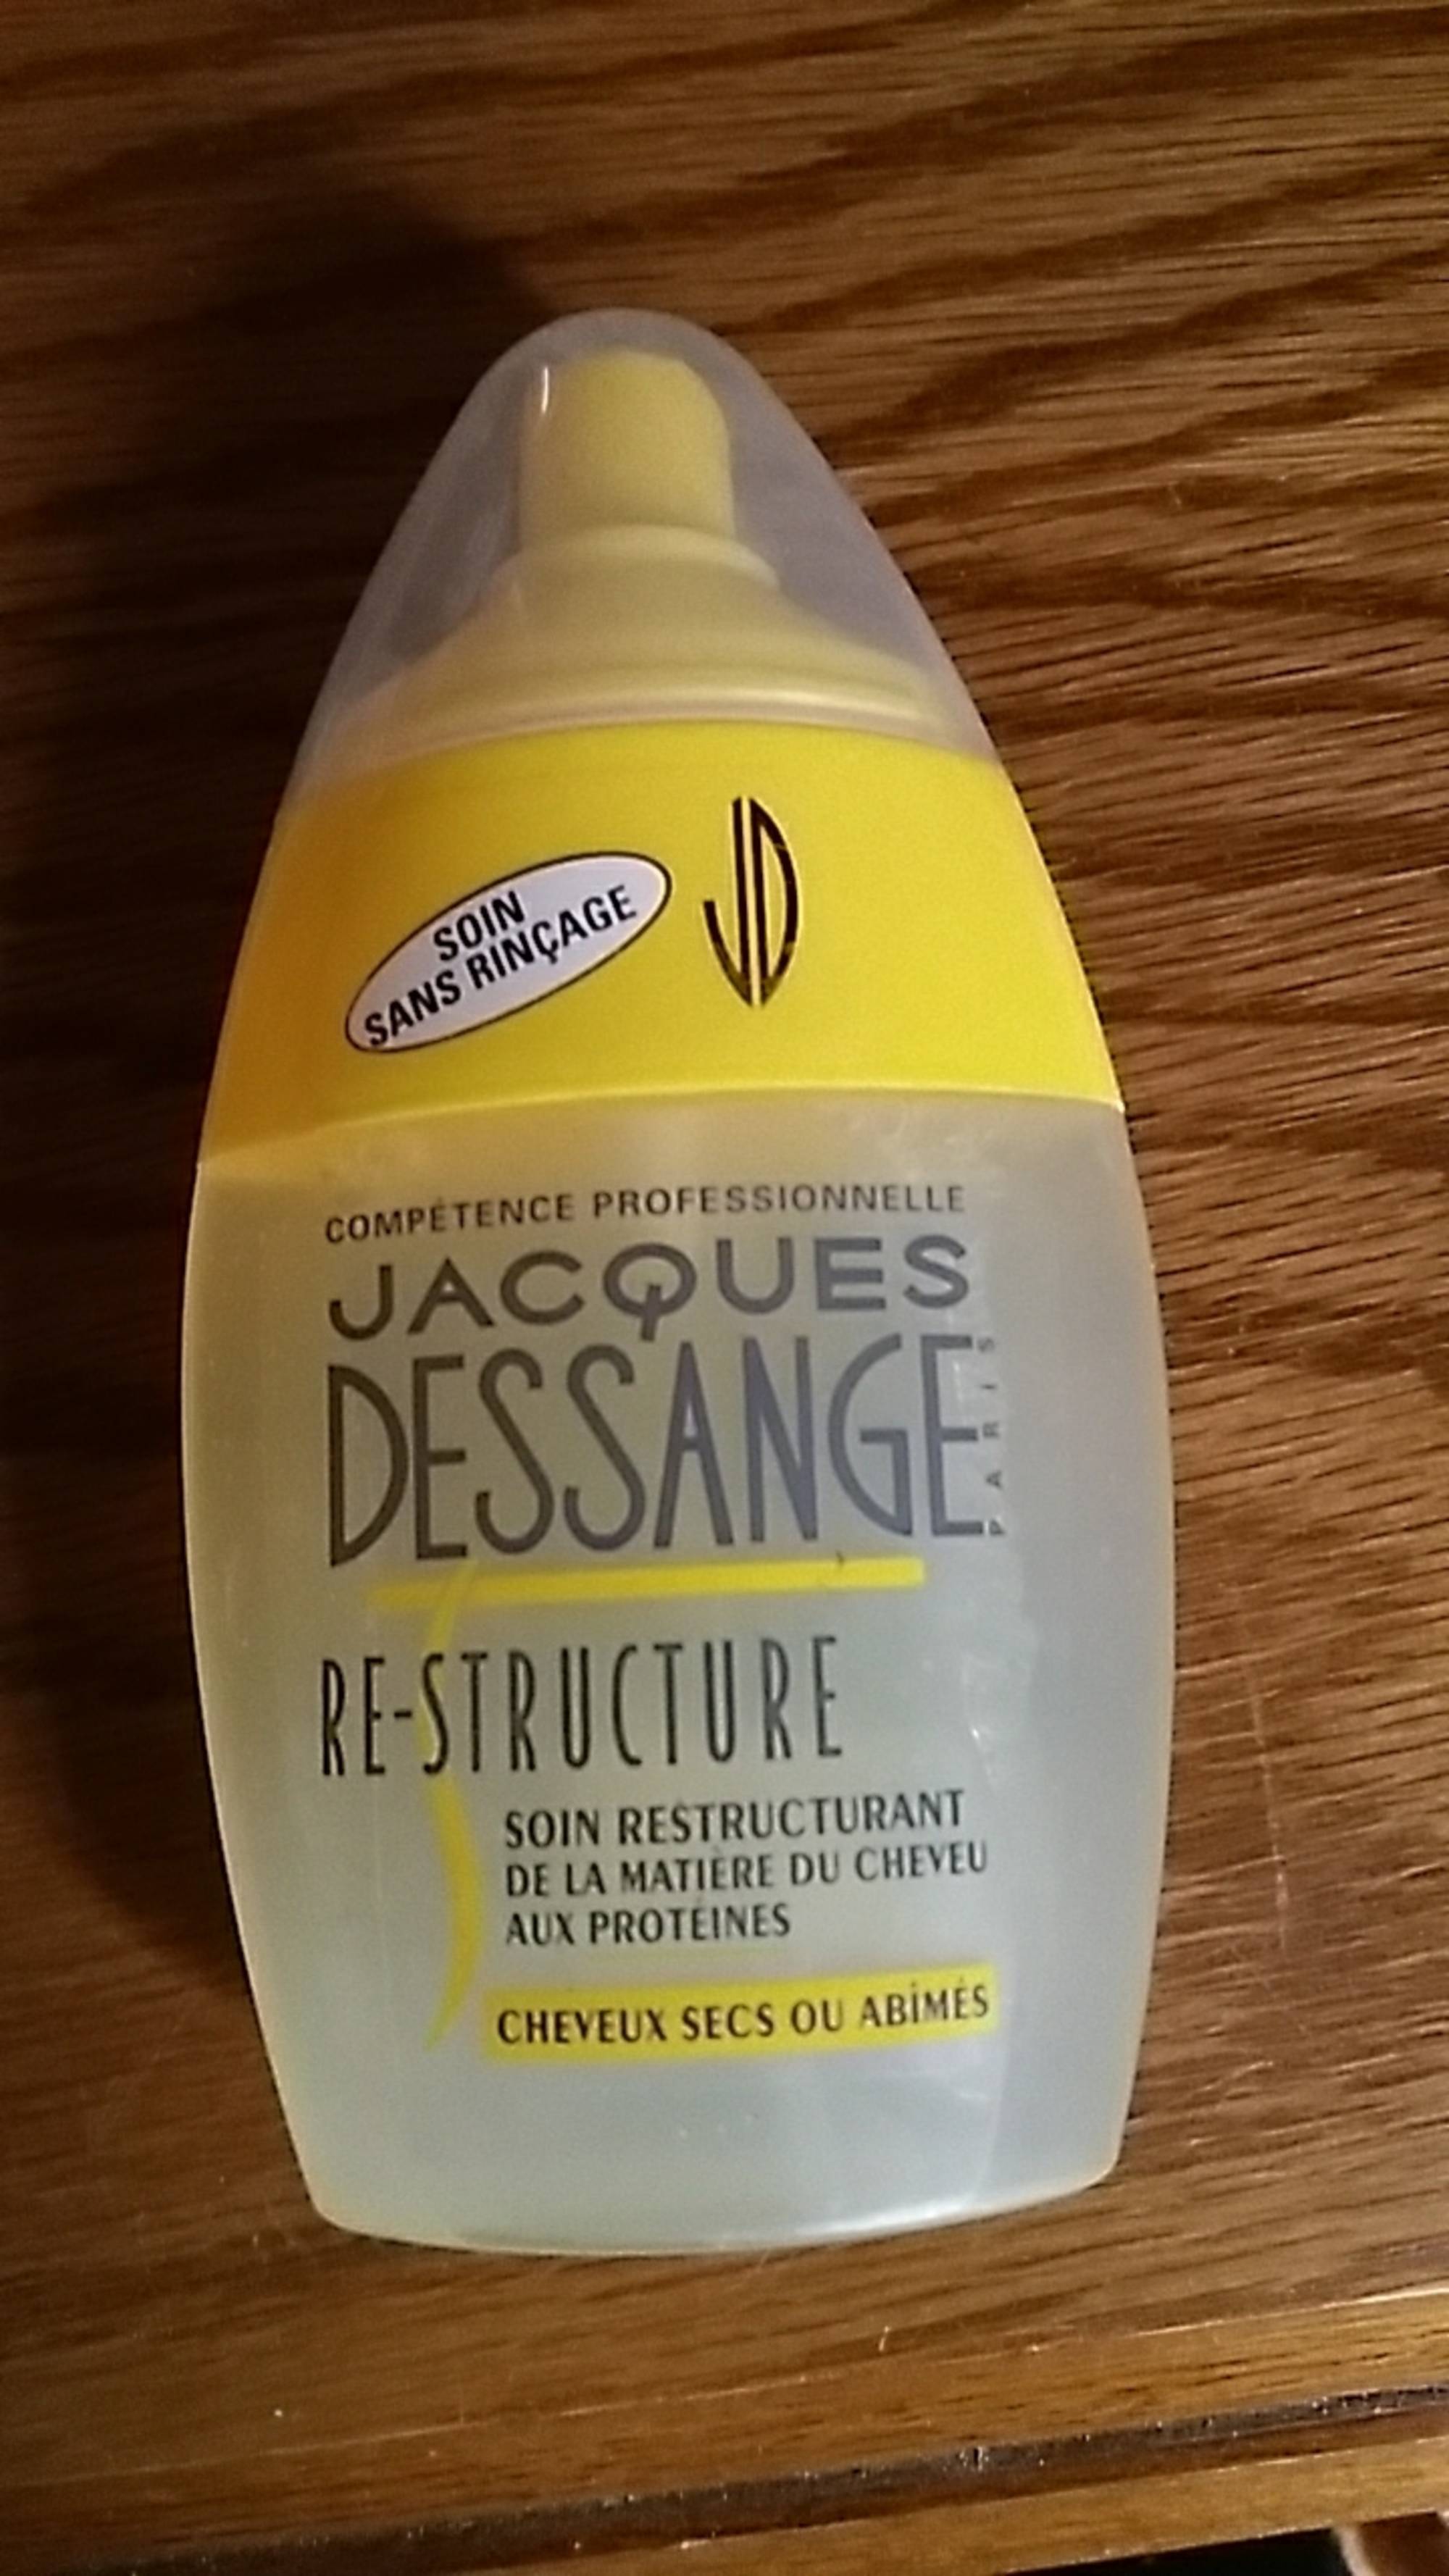 JACQUES DESSANGE - Re-structure 